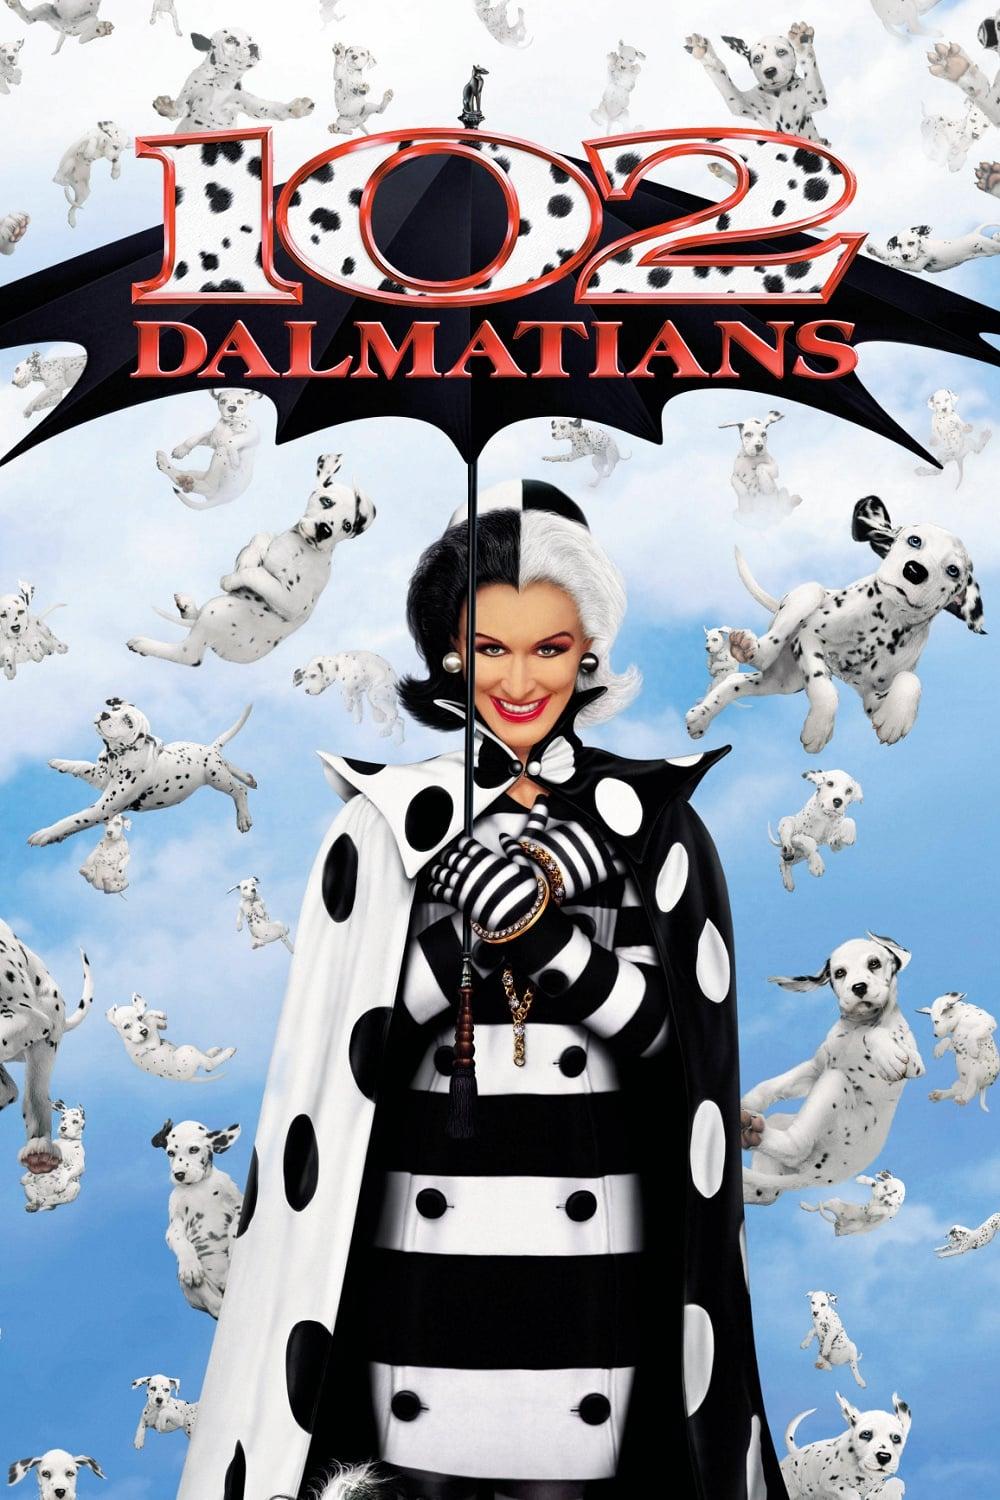 102 Dalmatians poster